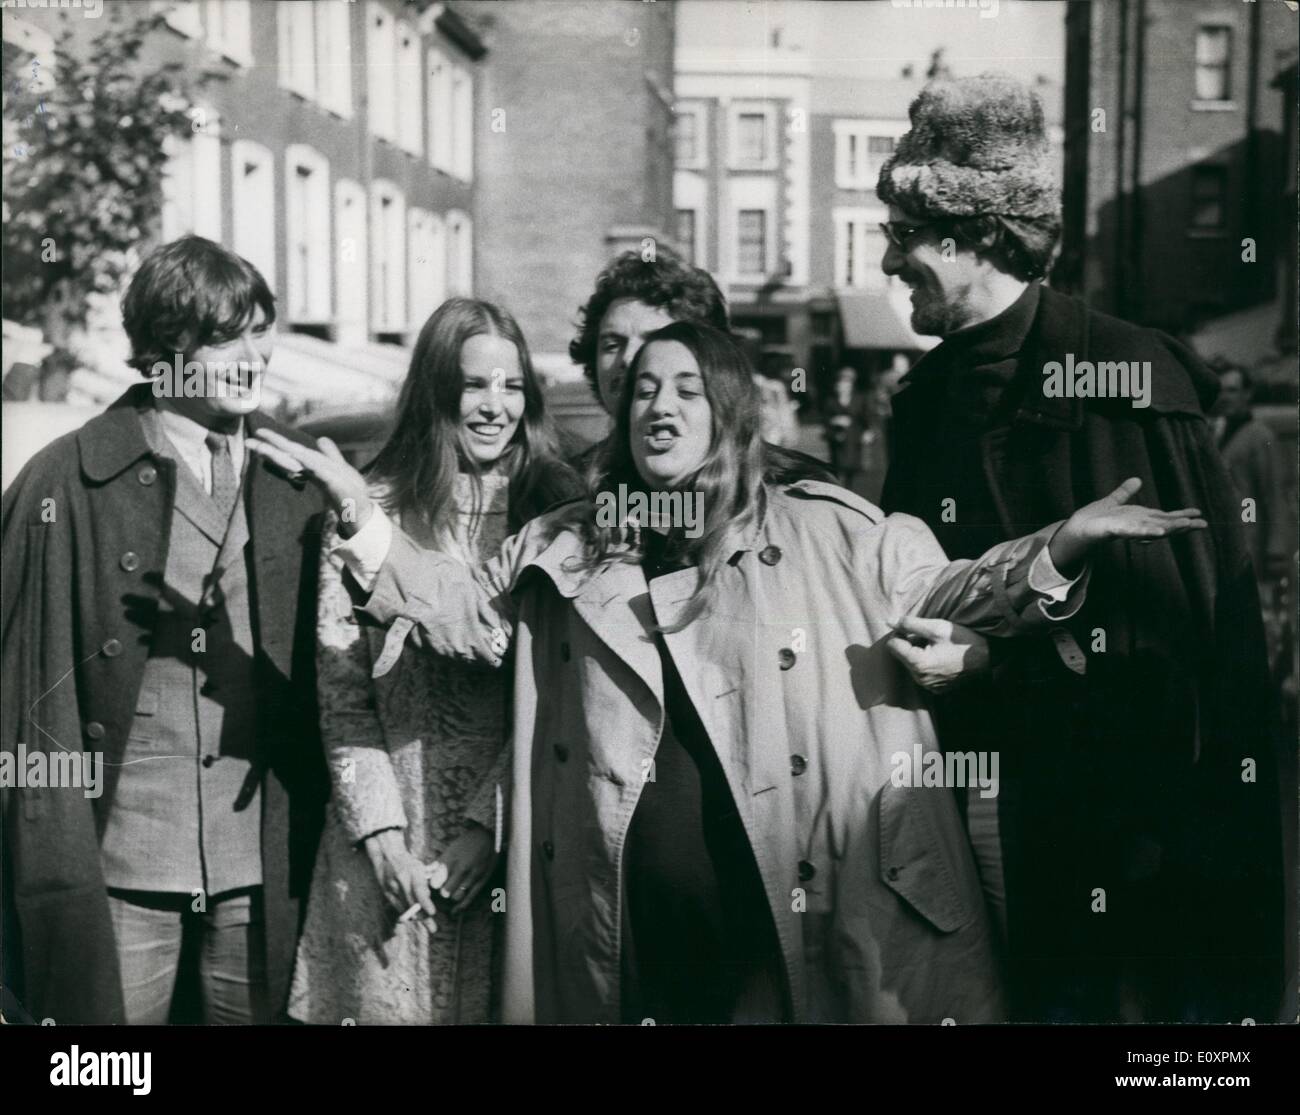 Ottobre 10, 1967 - Mama Cass compare in tribunale accusato di furto ma  viene scaricato: Cass Elliot, il 15-stone cantante dei Mamas and Papas  gruppo pop che è stato arrestato a Southampton